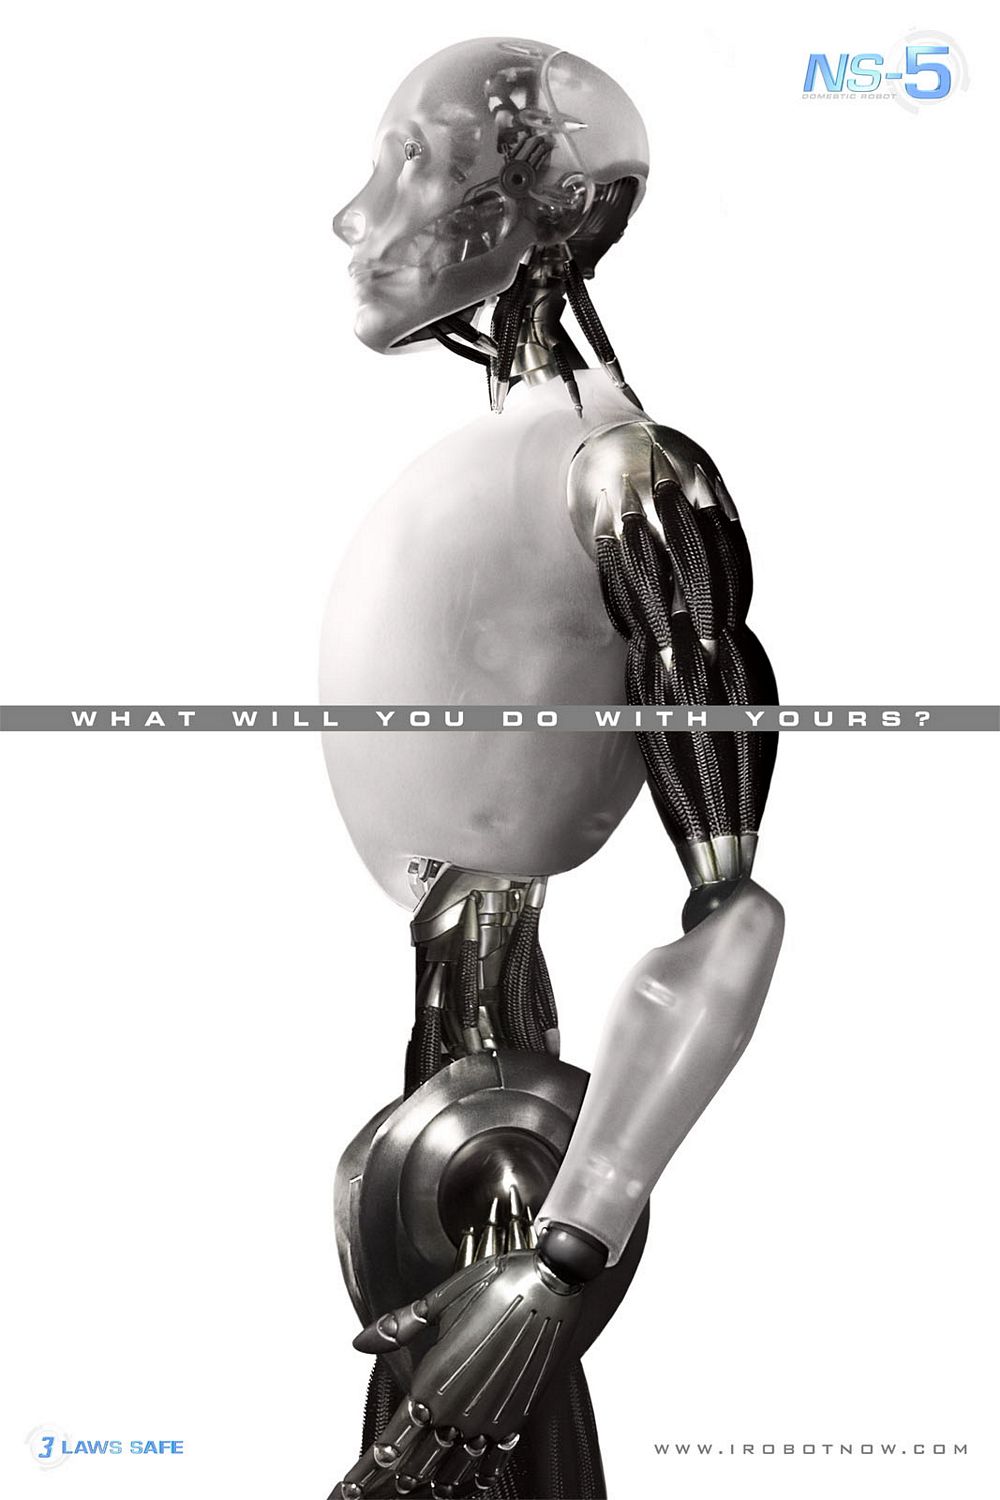 Постер - Я, робот: 1000x1500 / 135 Кб